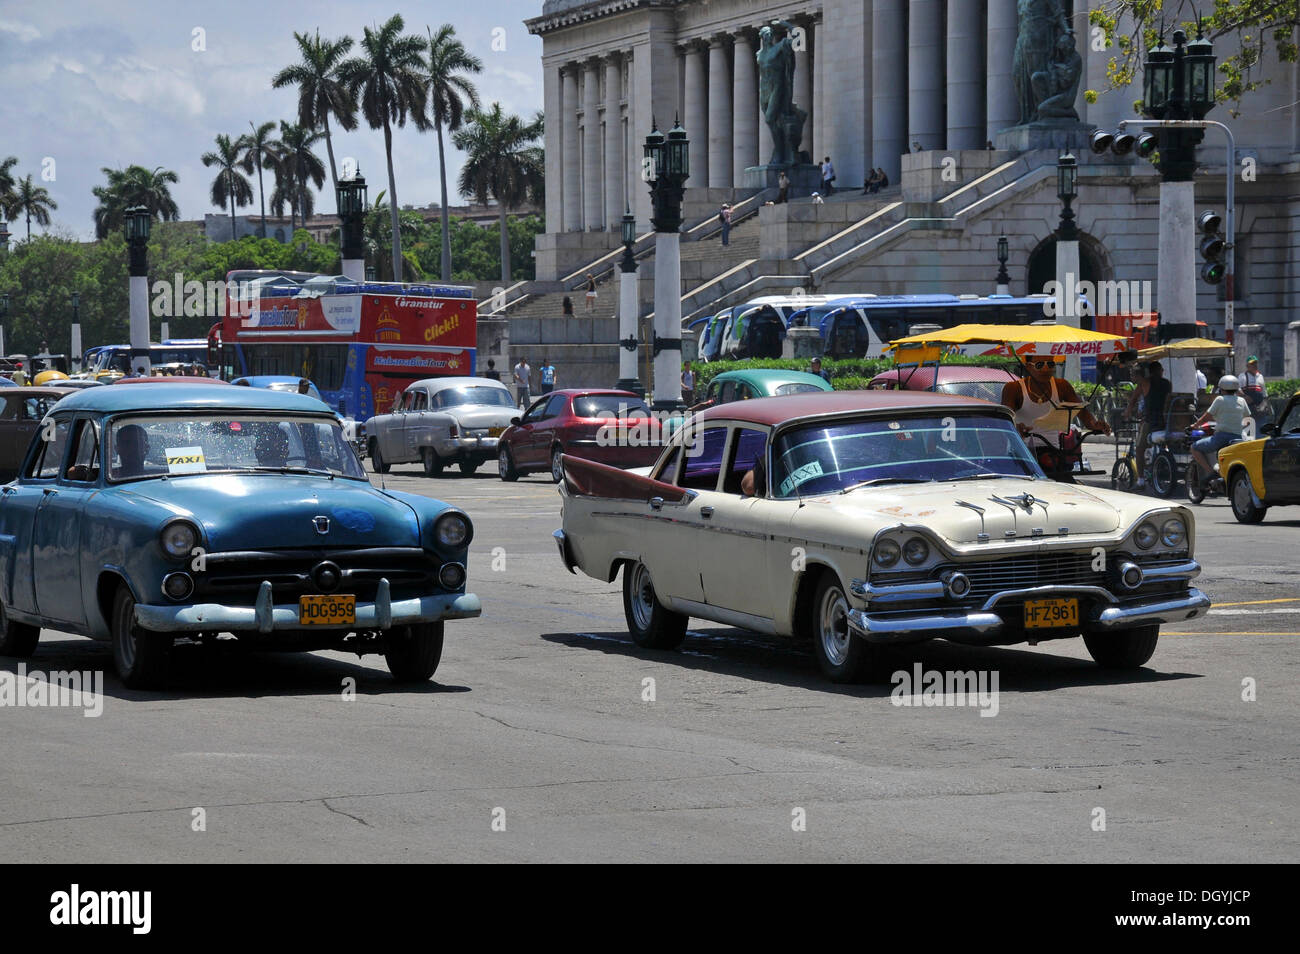 Auto d'epoca di fronte al Campidoglio, città vecchia, Havana, Cuba, dei Caraibi e America centrale Foto Stock